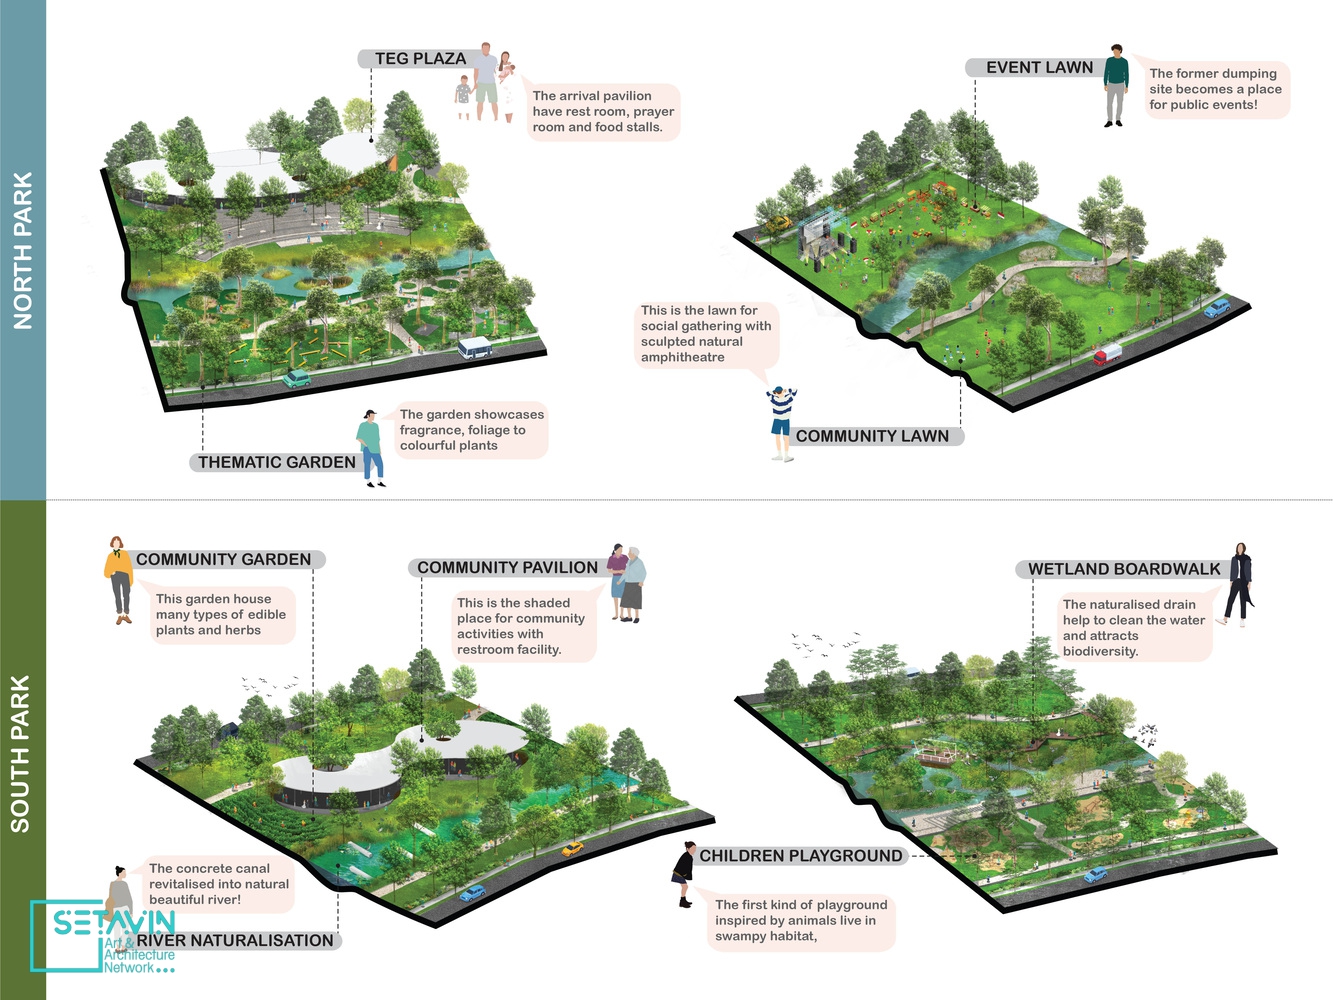 پارک Tebet Eco ، اثر استودیو معماری SIURA ، اندونزی , پارک , Tebet Eco ، فضای سبز شهری , SIURA ، اندونزی , پارک عمومی , پروژه احیای پارک , زیرساخت سبز , درختان ارزشمند , معماری سبز , جاکارتا , زیست محیطی , تفریحی